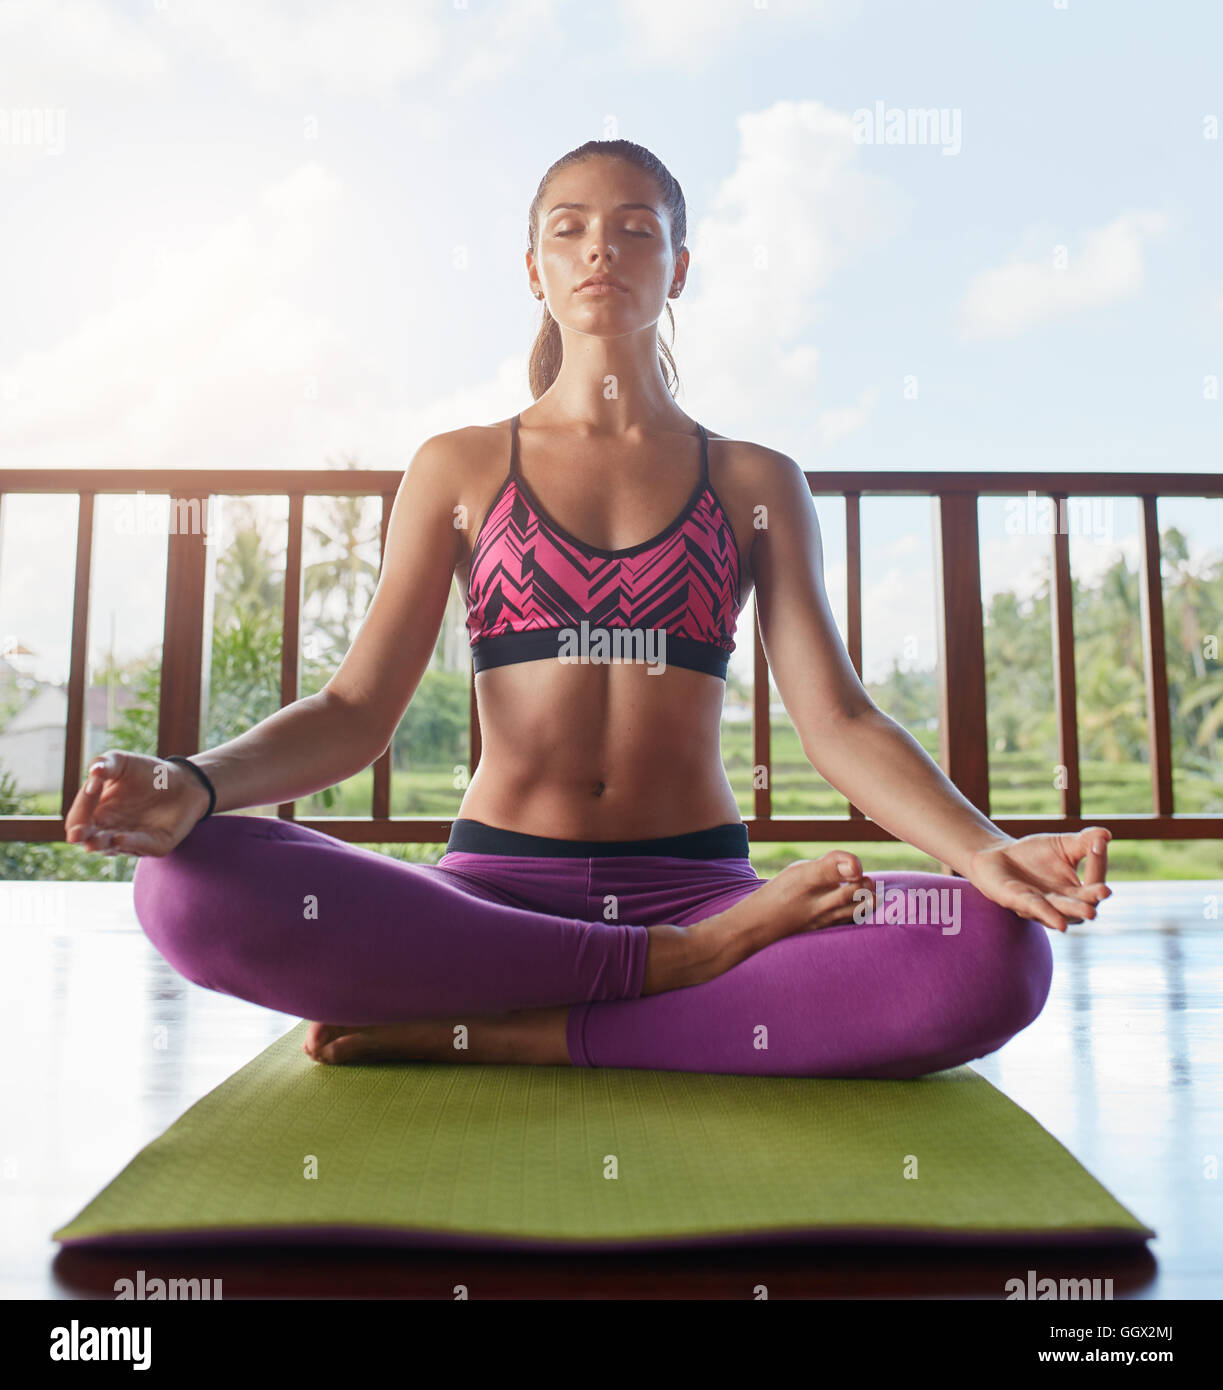 Giovane donna seduta sul pavimento in posa yoga con le mani sulle ginocchia, posa Lotus. modello femminile di fitness che fa meditazione yoga. Foto Stock